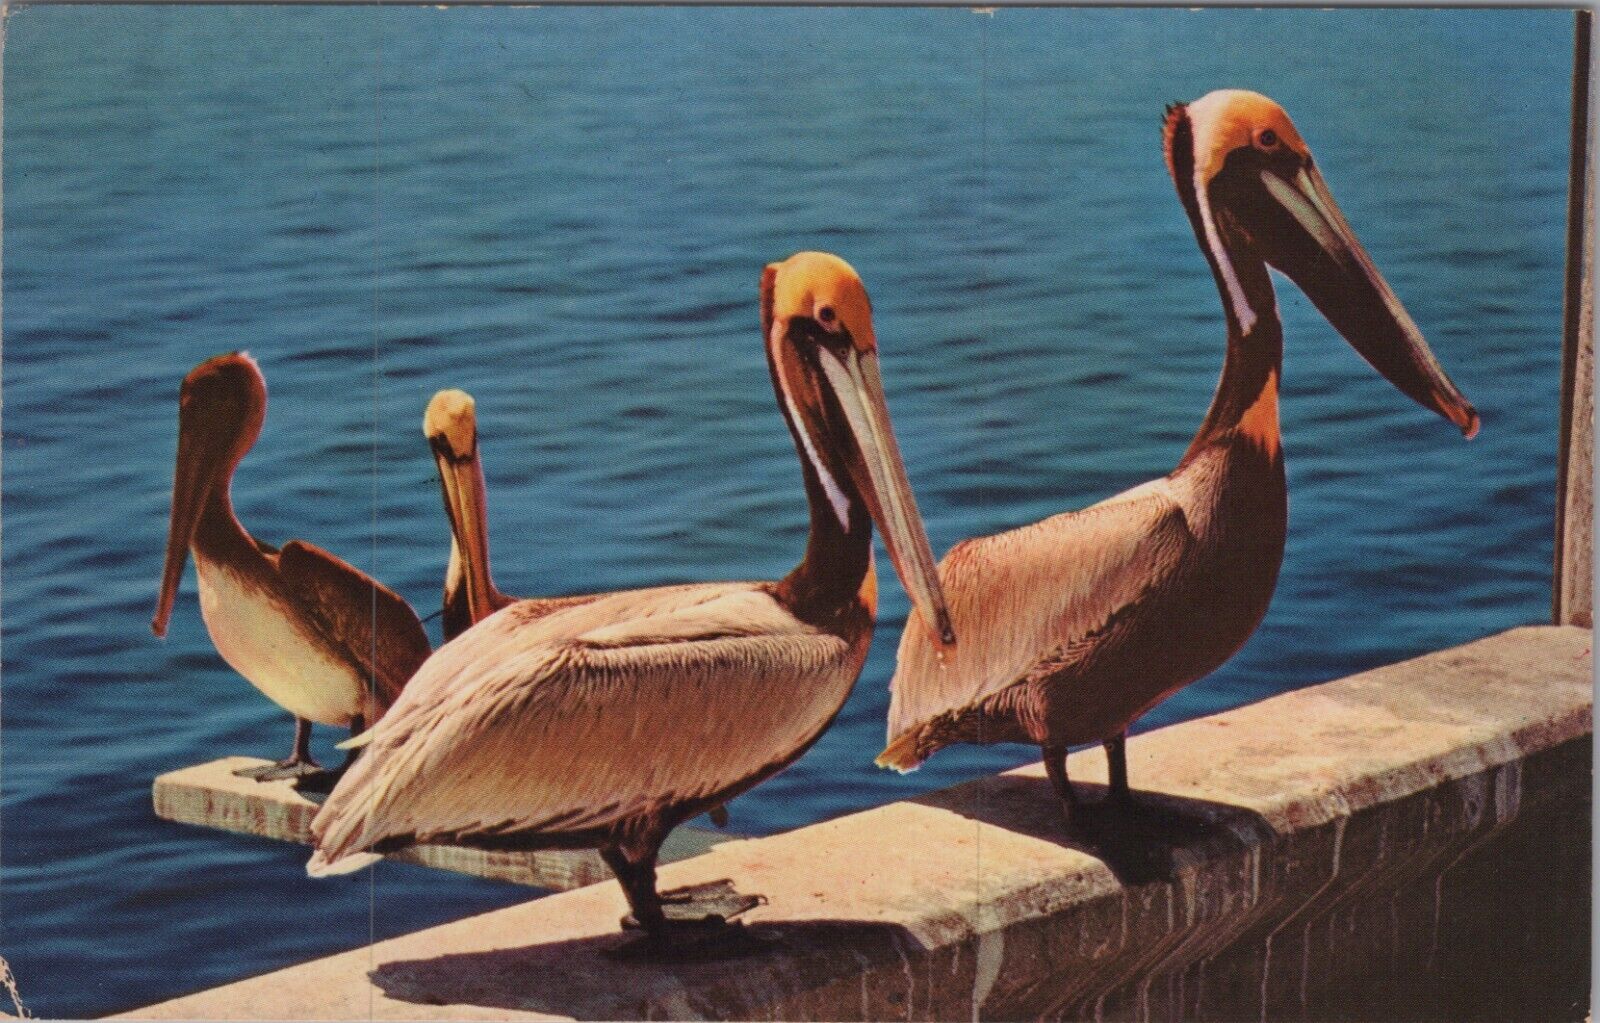 A Peculiar Bird is the Pelican Florida FL c1960-70s UNP Postcard 7521.1 MR ALE